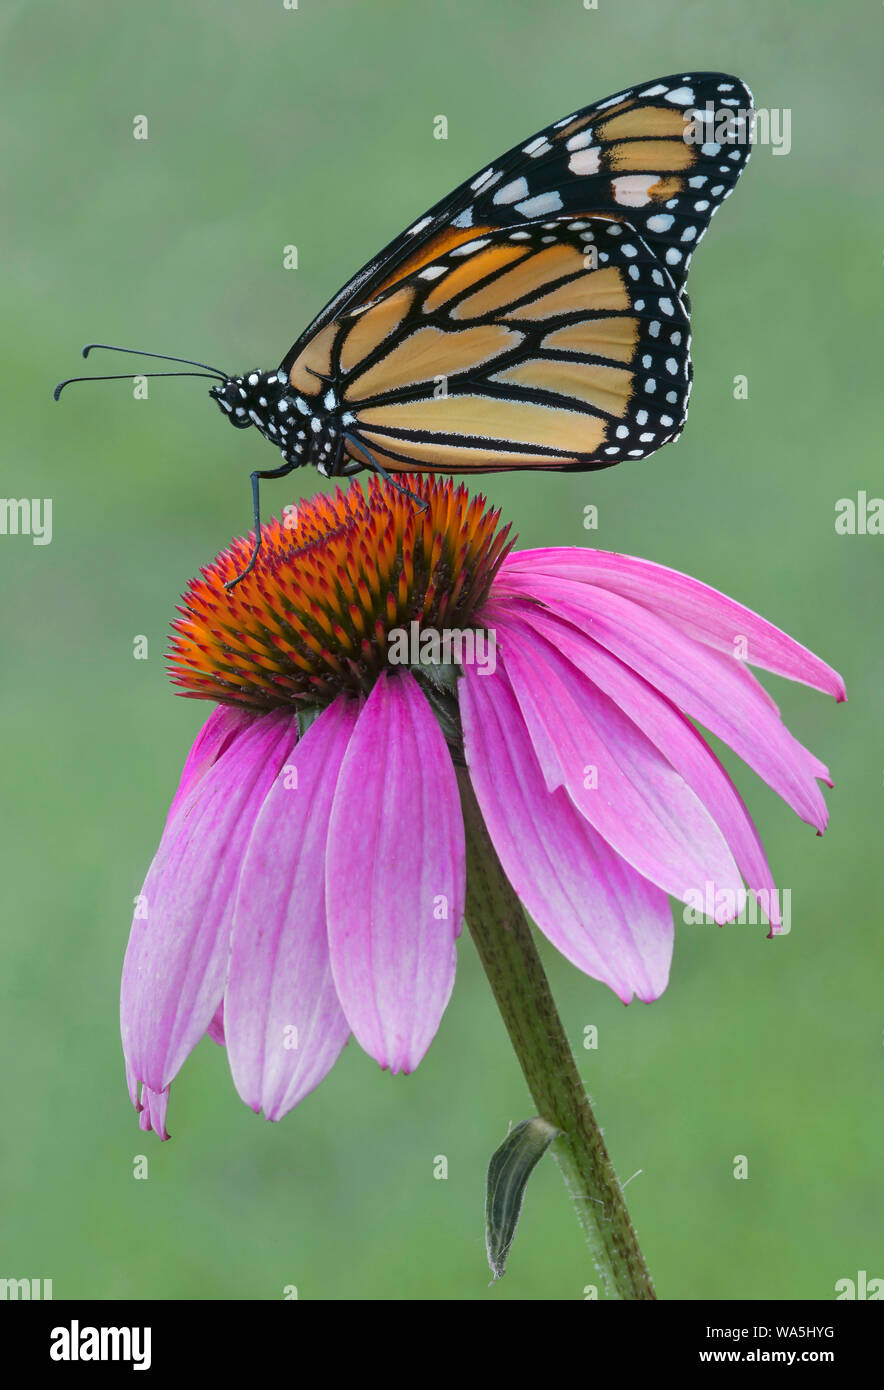 Des profils le monarque (Danaus plexippus) sur l'échinacée (Echinacea purpurea), l'Est des Etats-Unis, par aller Moody/Dembinsky Assoc Photo Banque D'Images